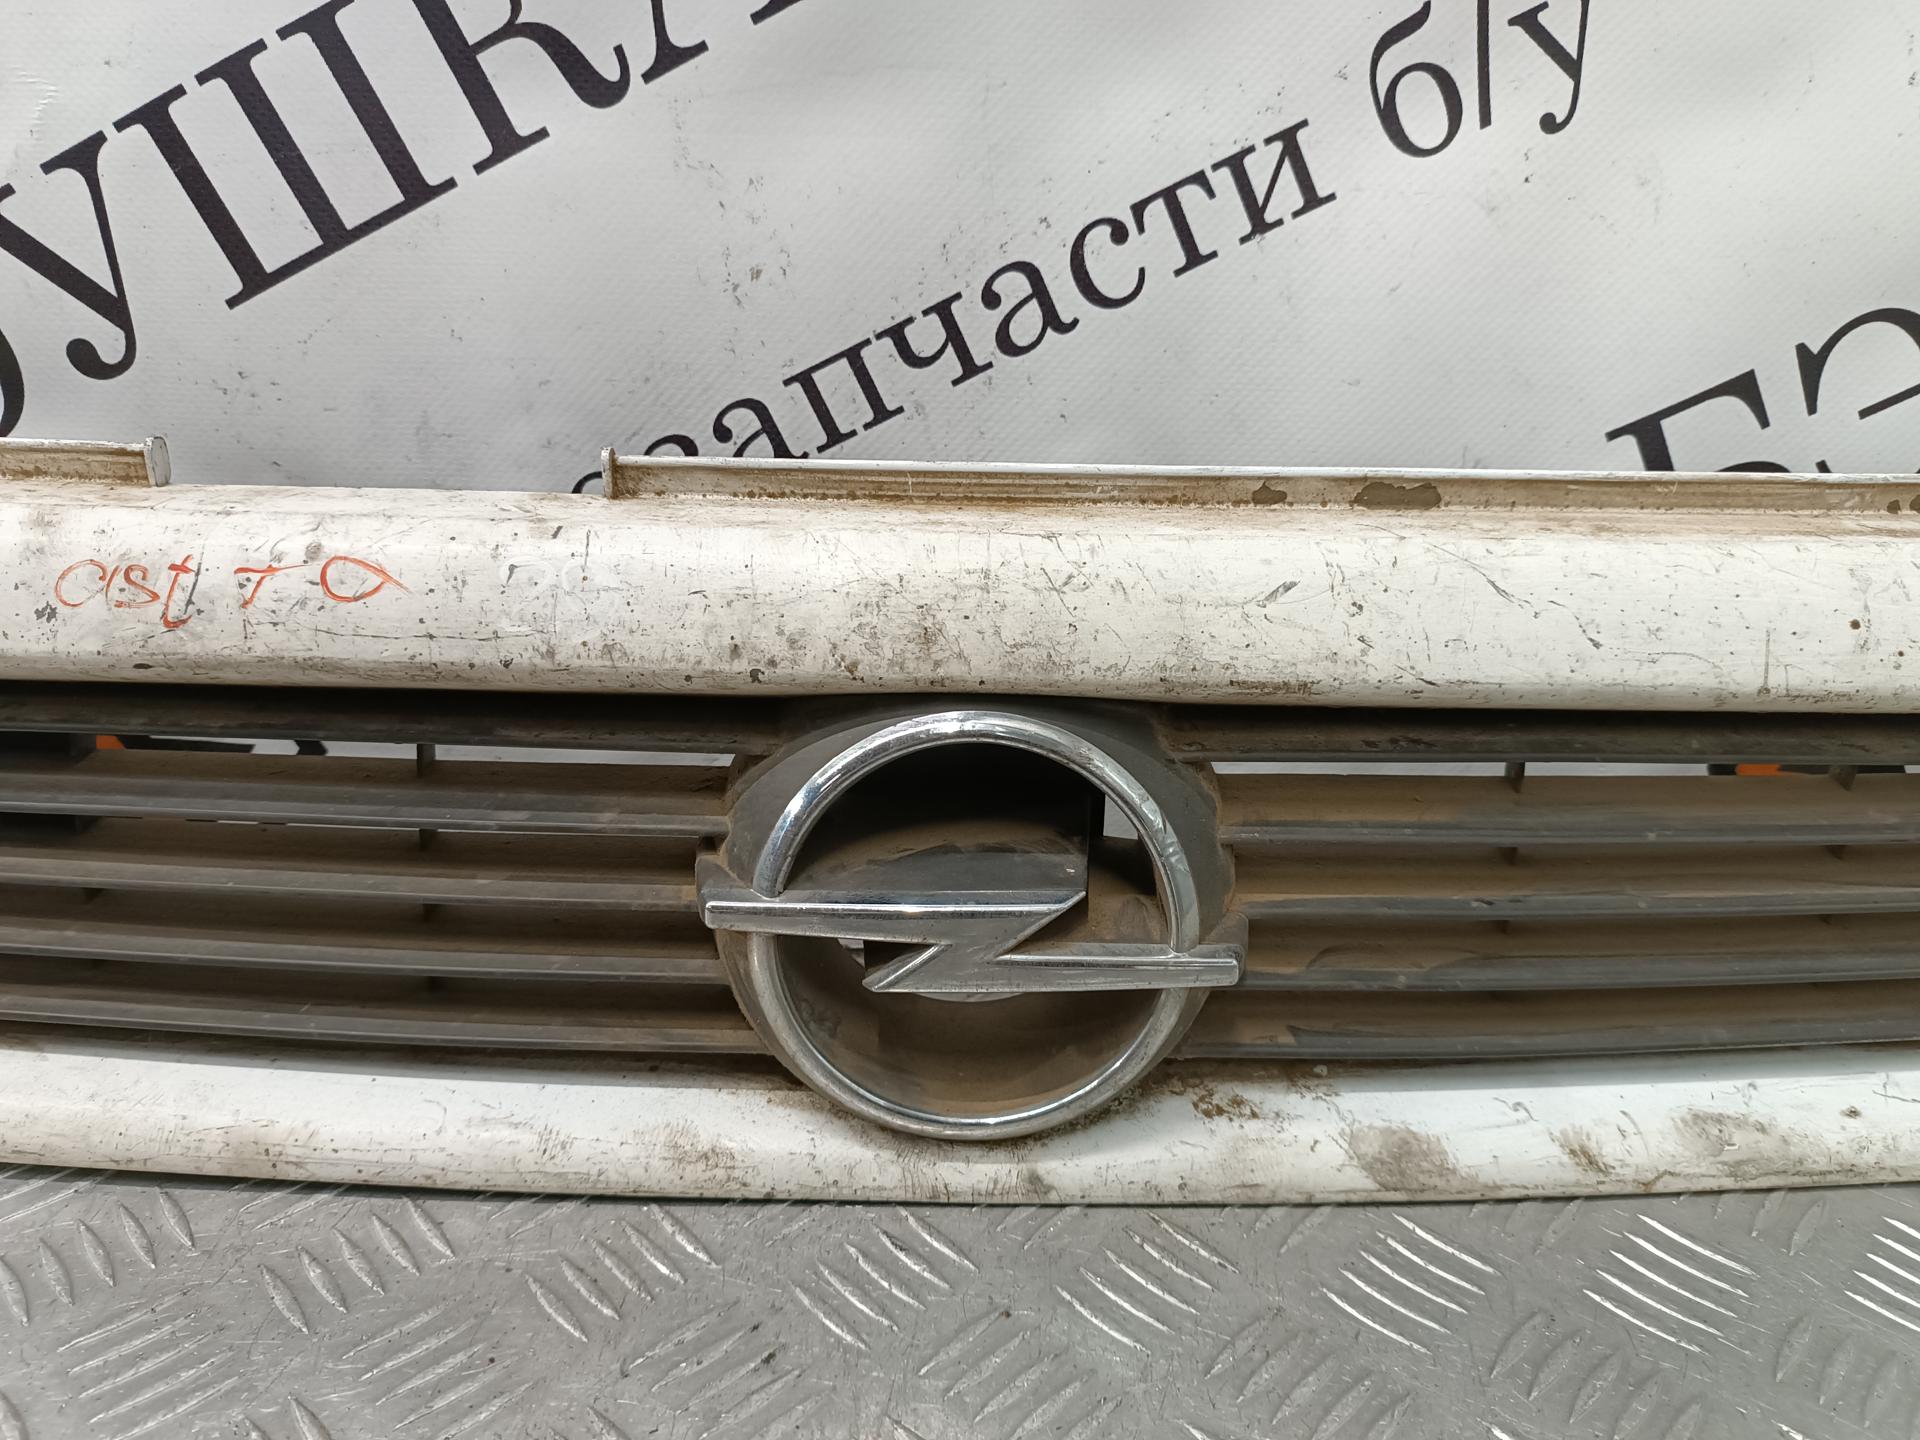 Решетка радиатора Opel Astra G купить в Беларуси